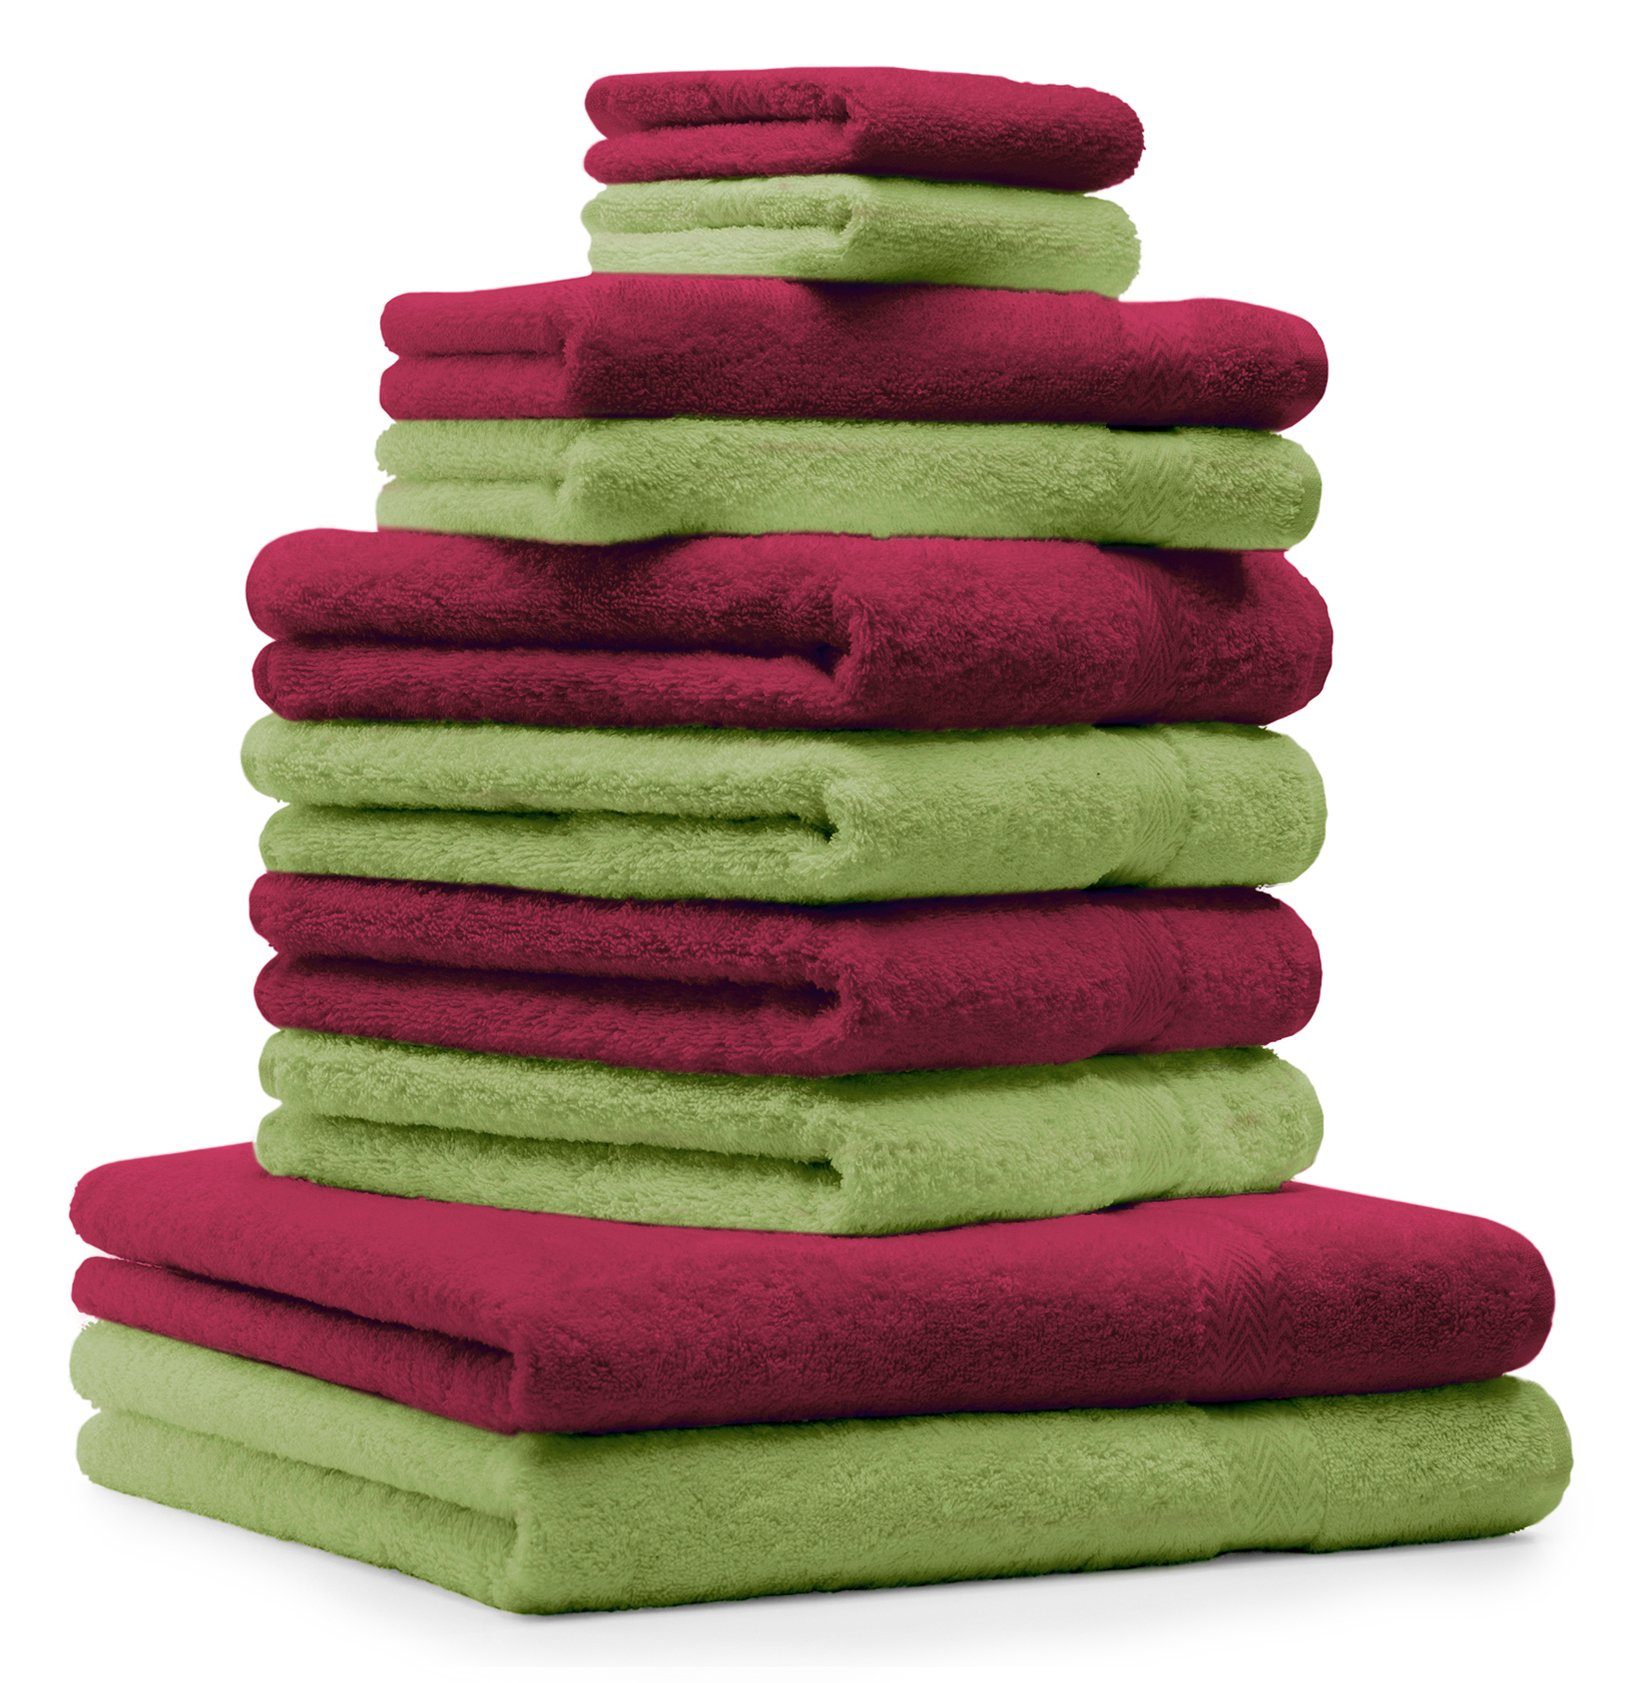 Betz Handtuch Set 10-tlg. Handtuch-Set Premium Farbe Dunkelrot & Apfelgrün, 100% Baumwolle, (Set, 10-tlg)